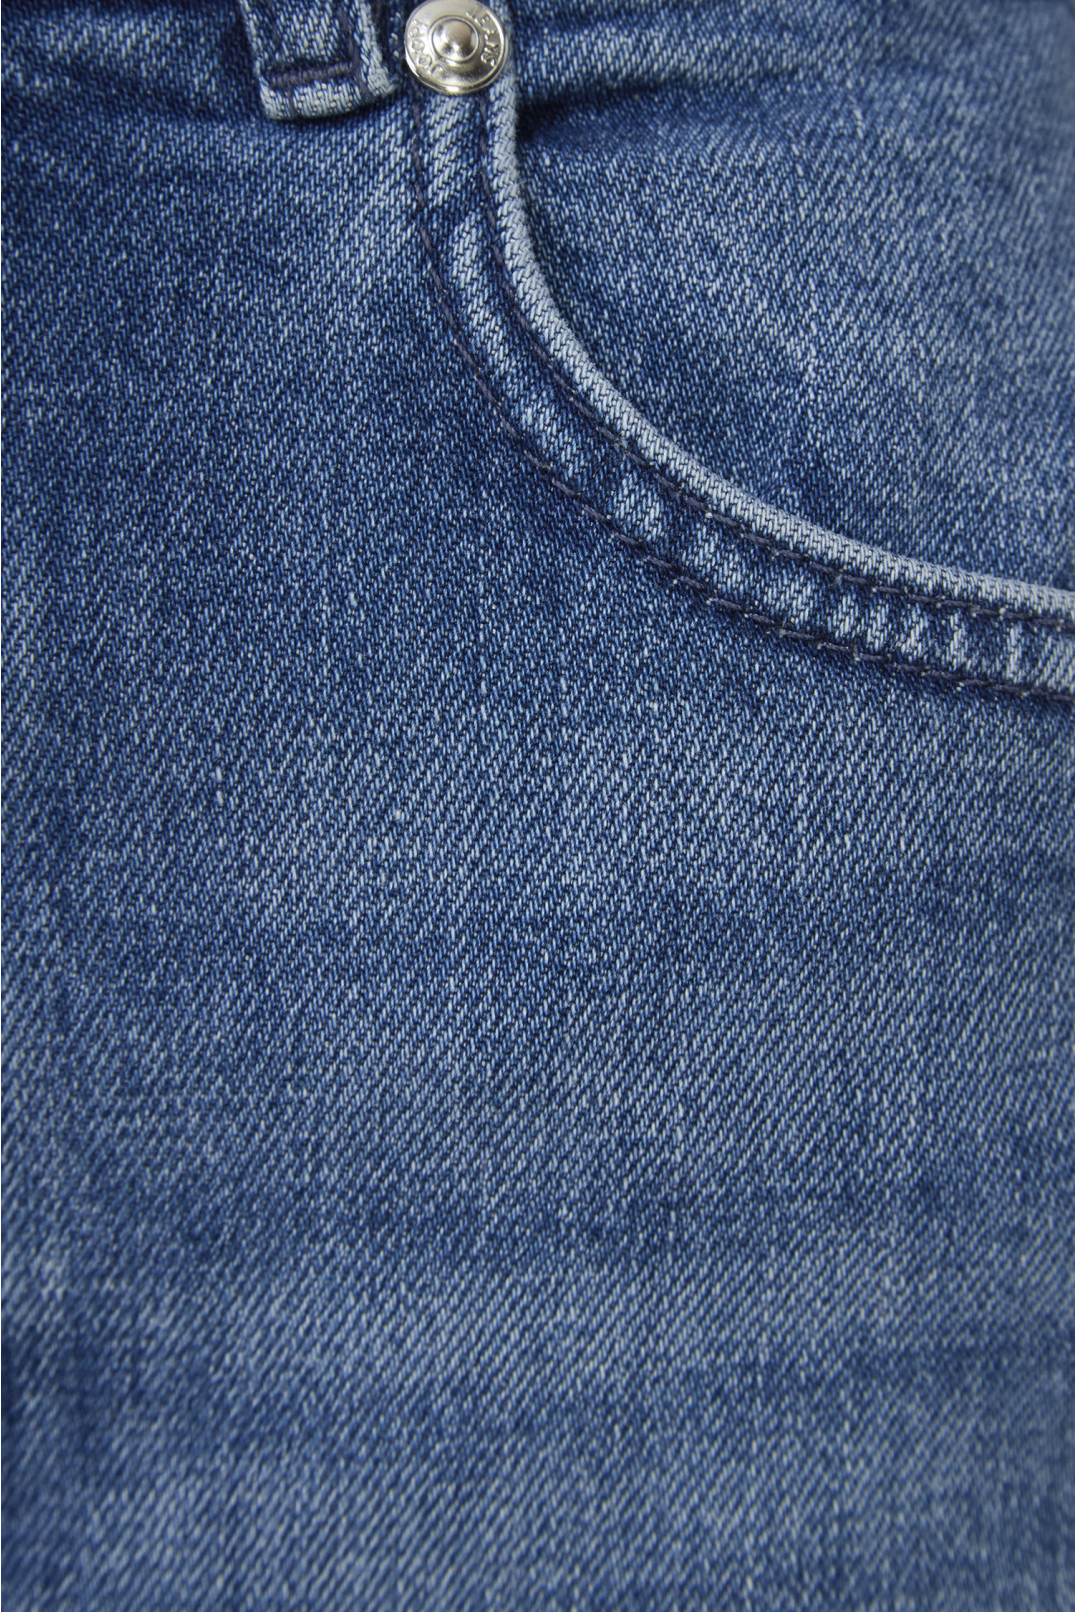 Женская синяя джинсовая юбка - 3